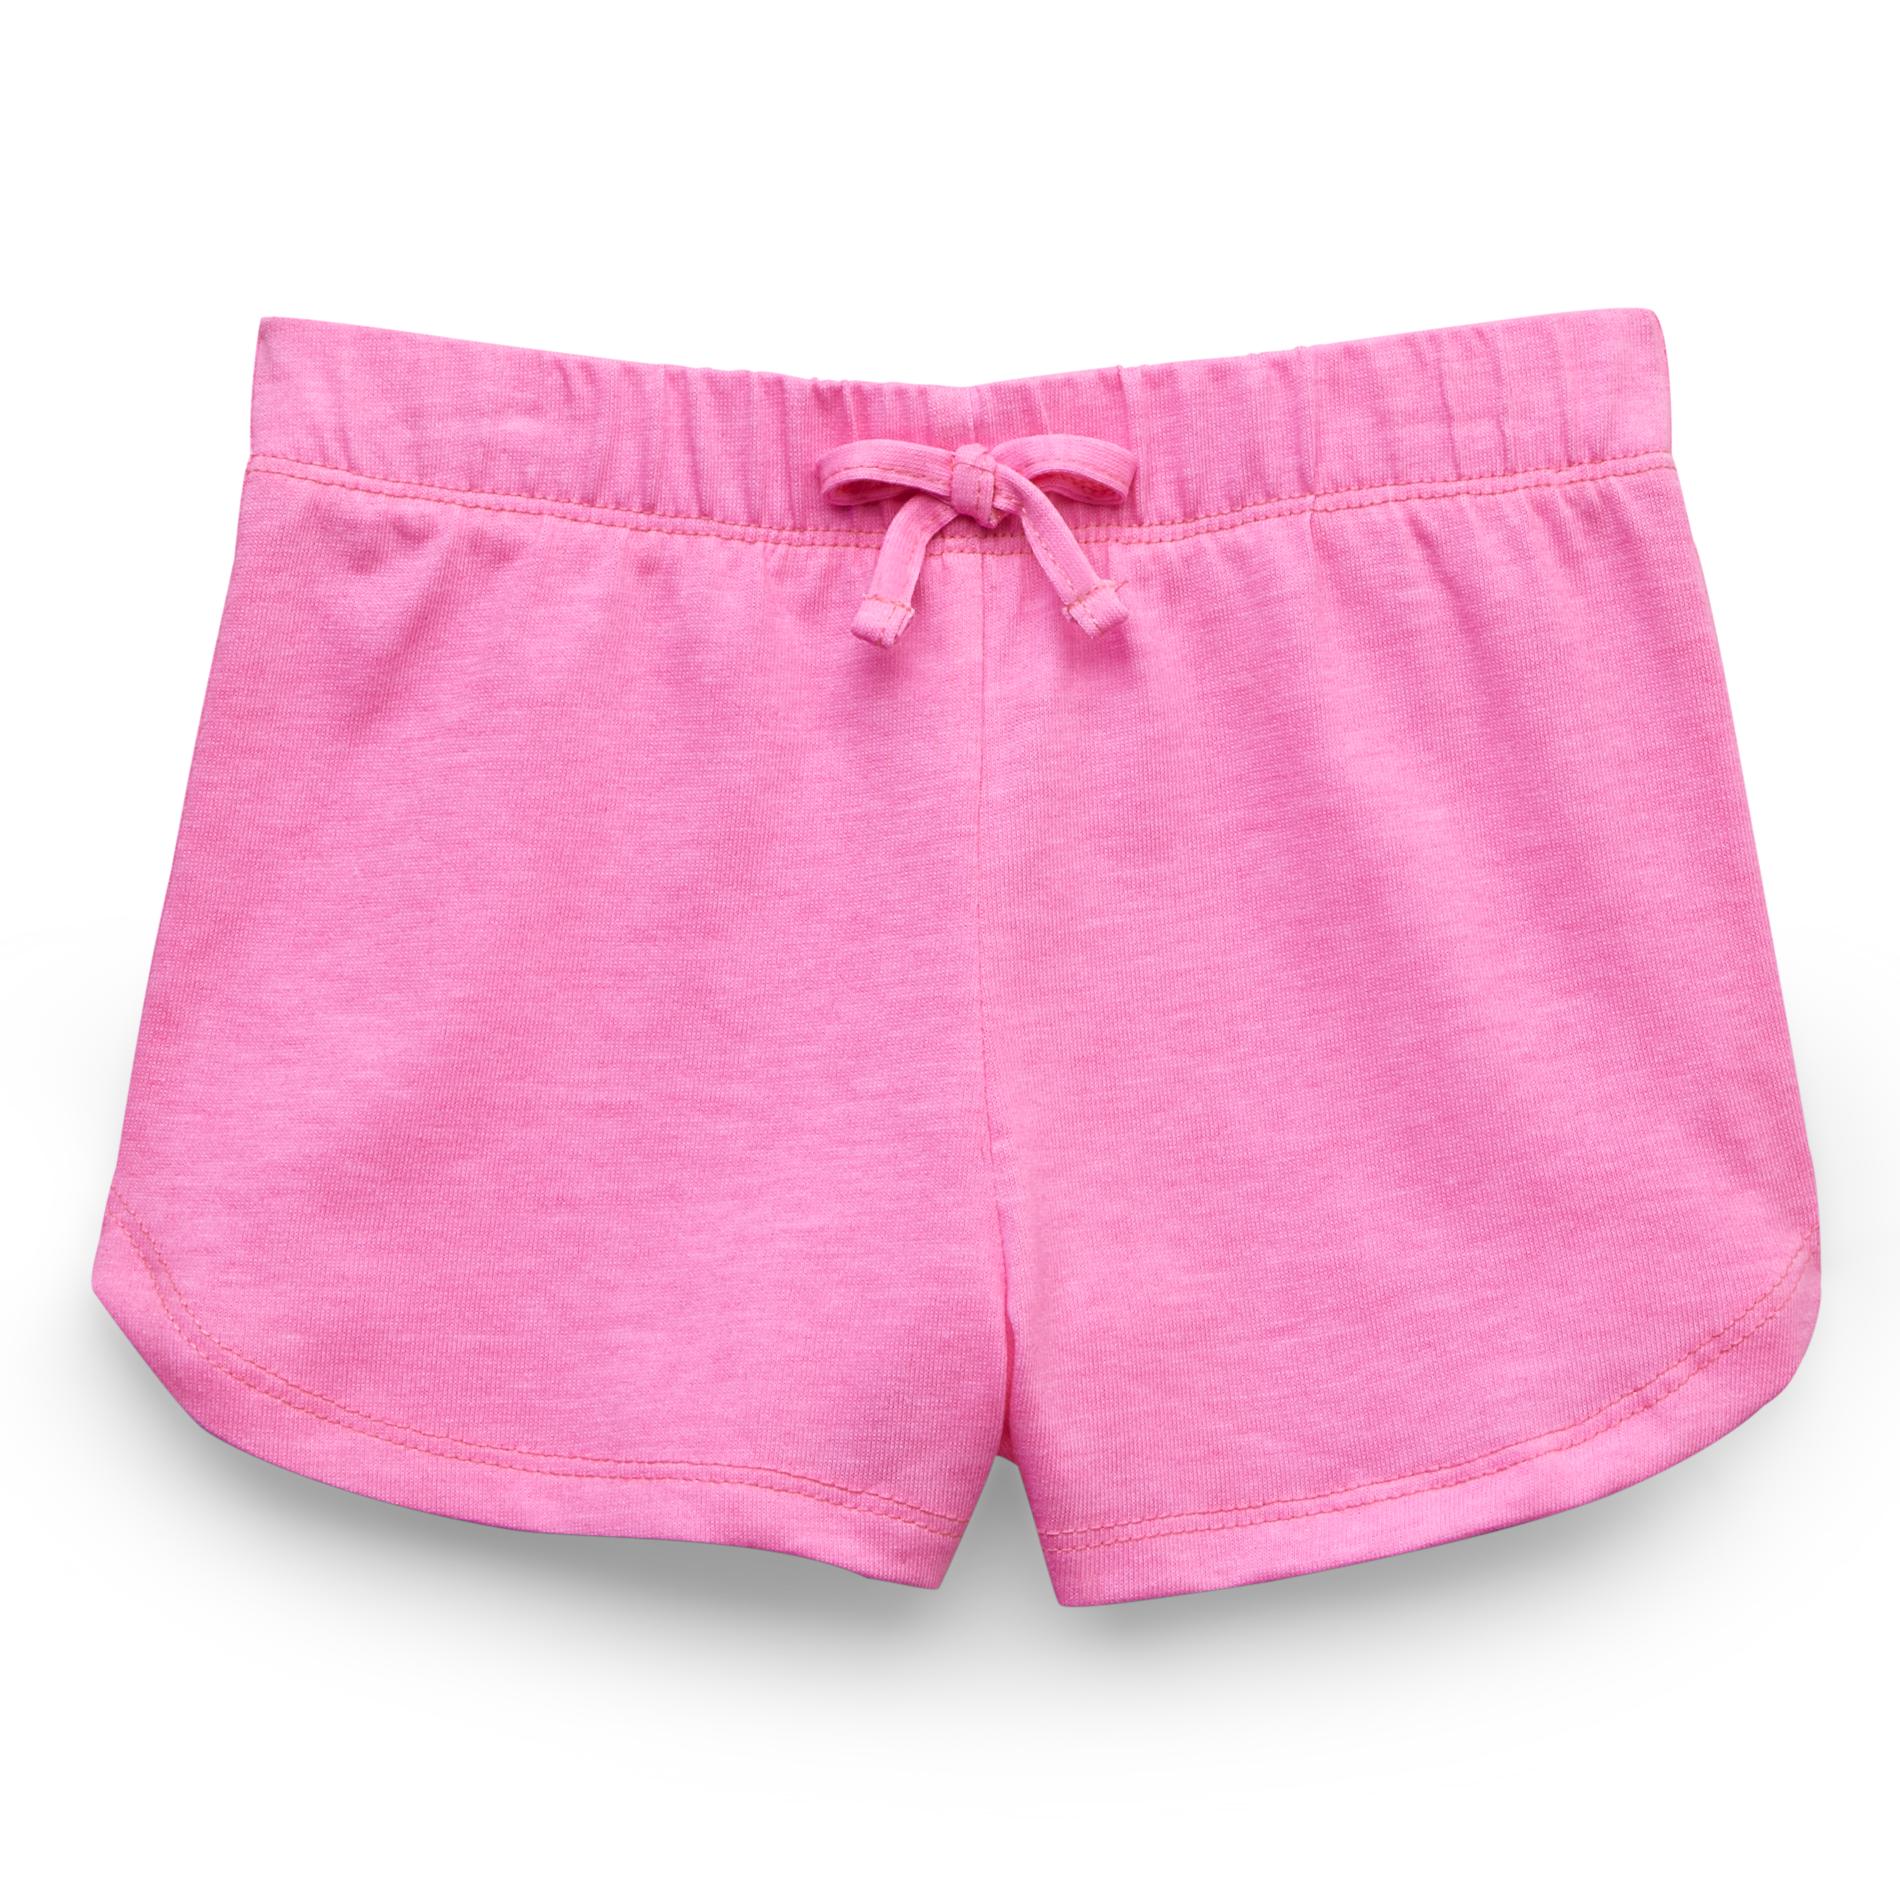 WonderKids Infant & Toddler Girl's Basic Knit Shorts